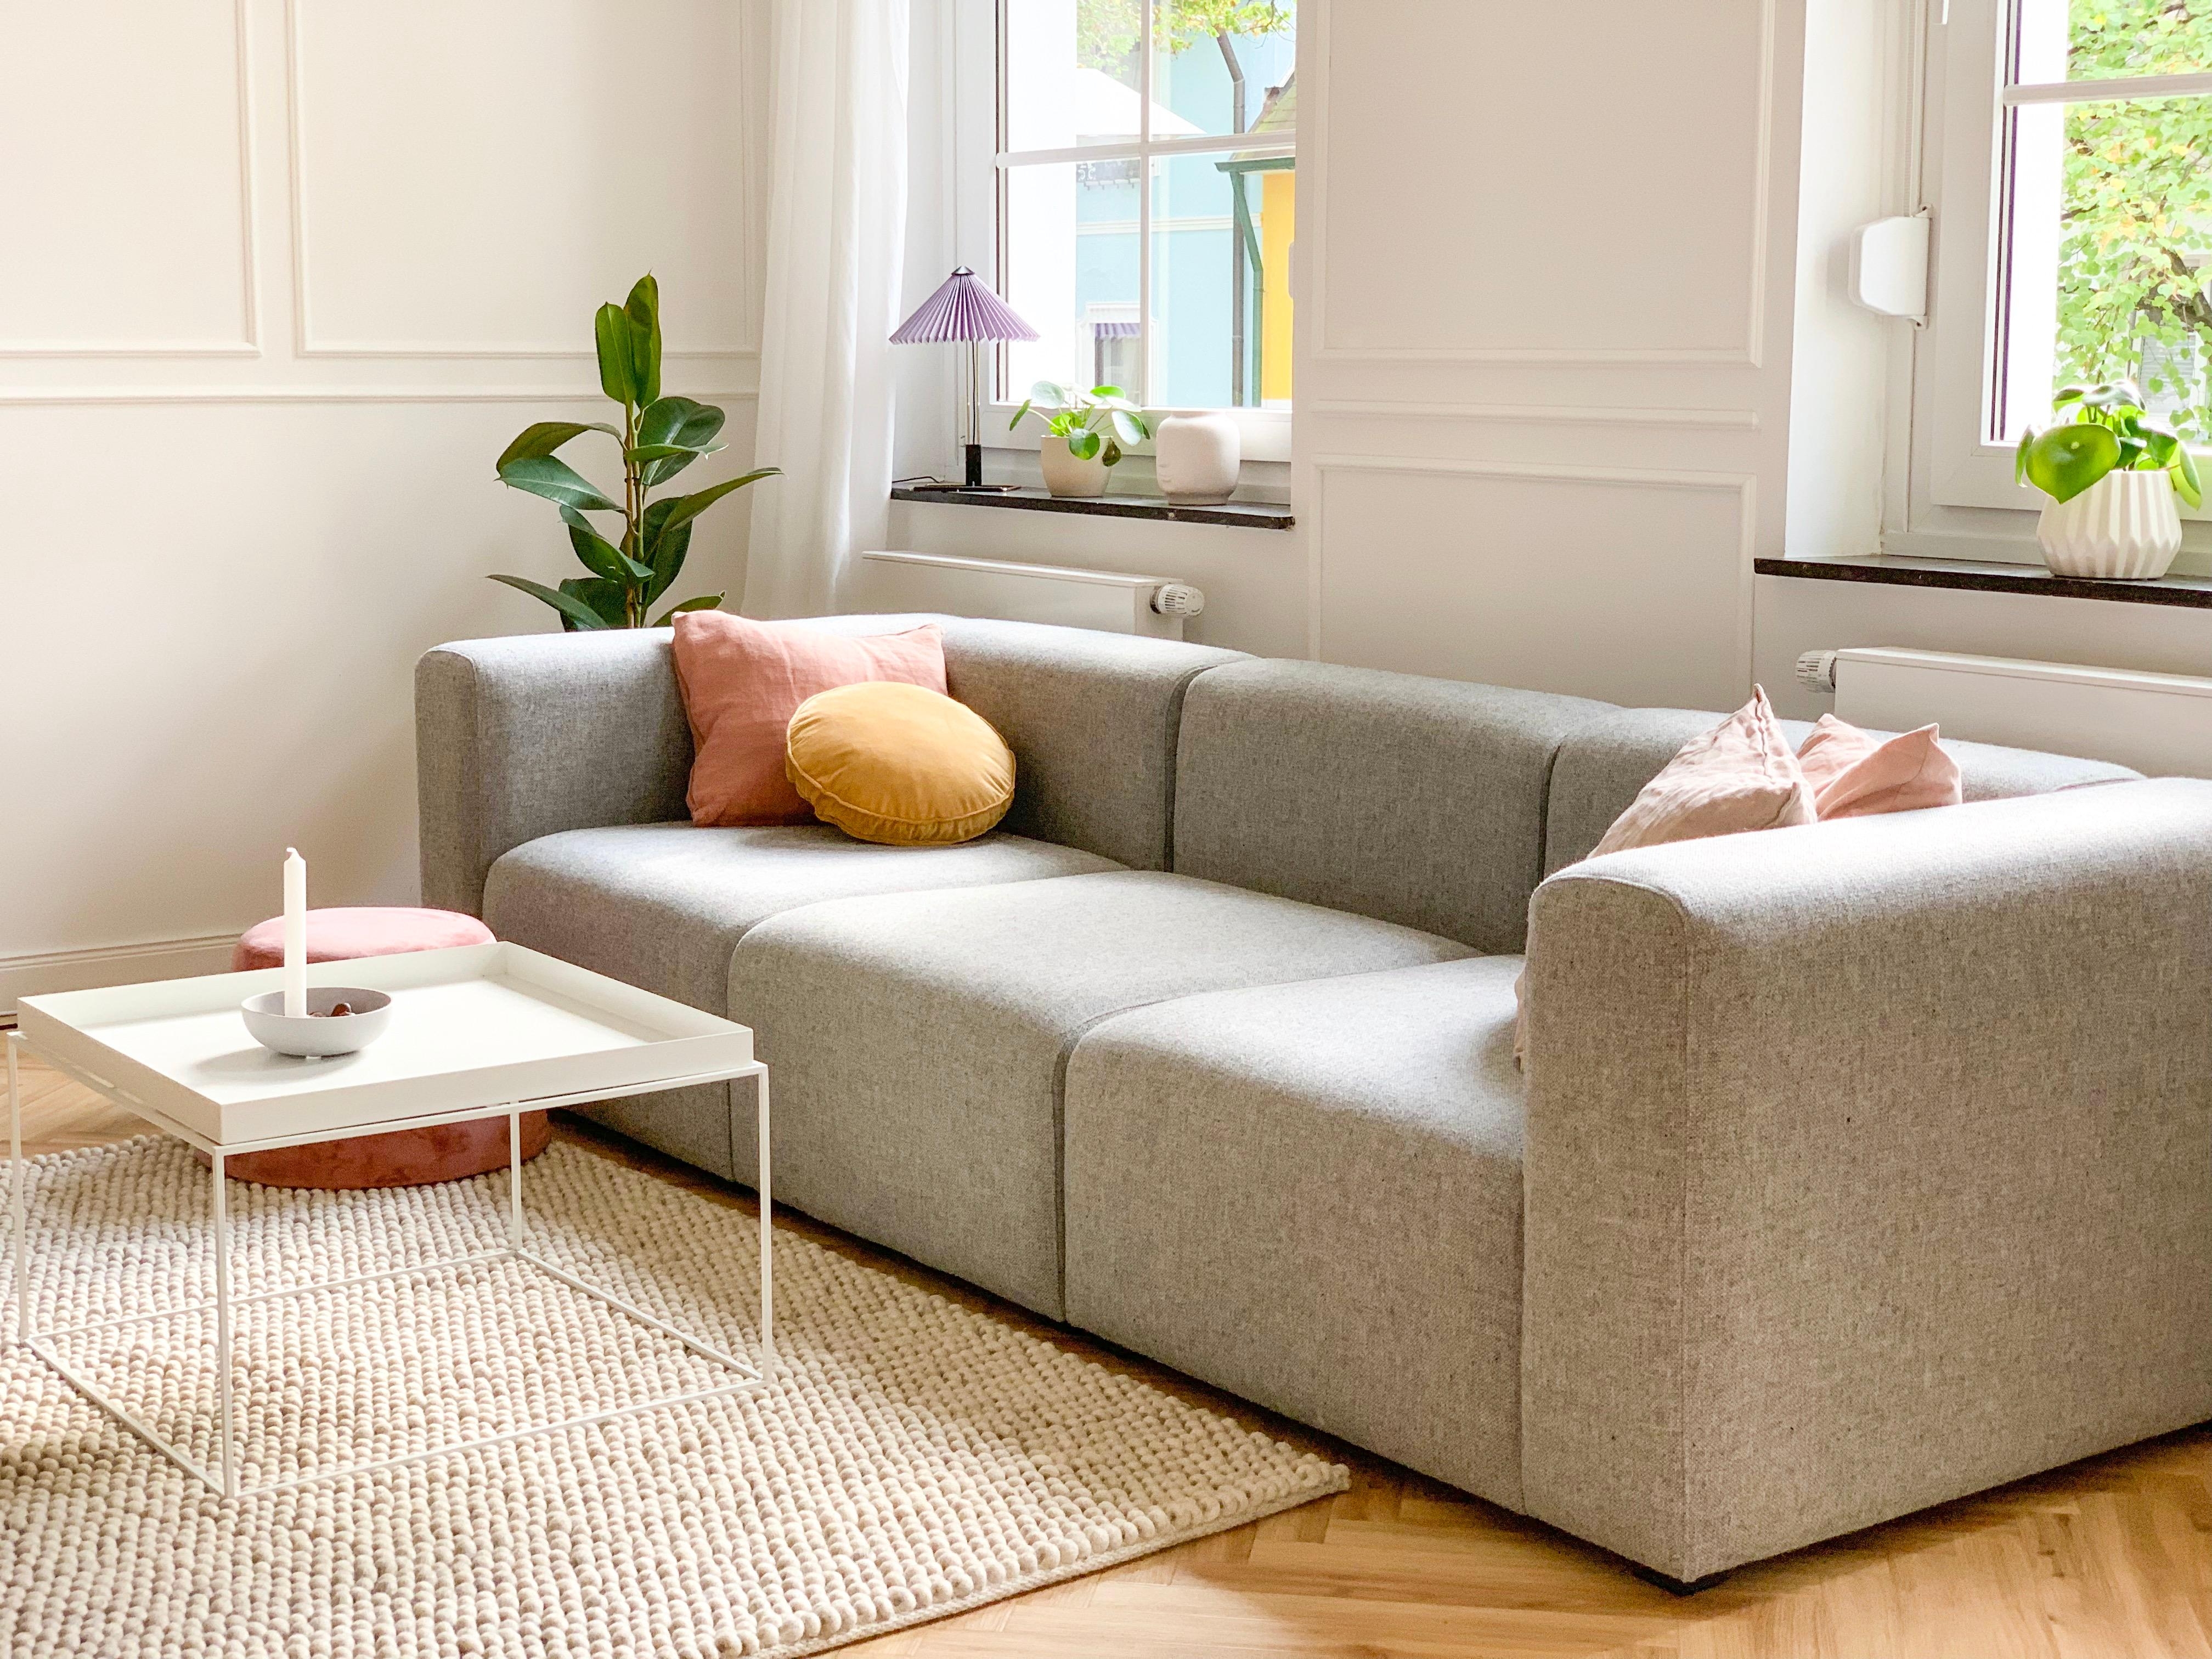 Verliebt in unser neues Möbelstück ❤️ #hay #haymags #haymatin #couchliebt #scandiliebe #scandiinteriors #wohnzimmer #sofa